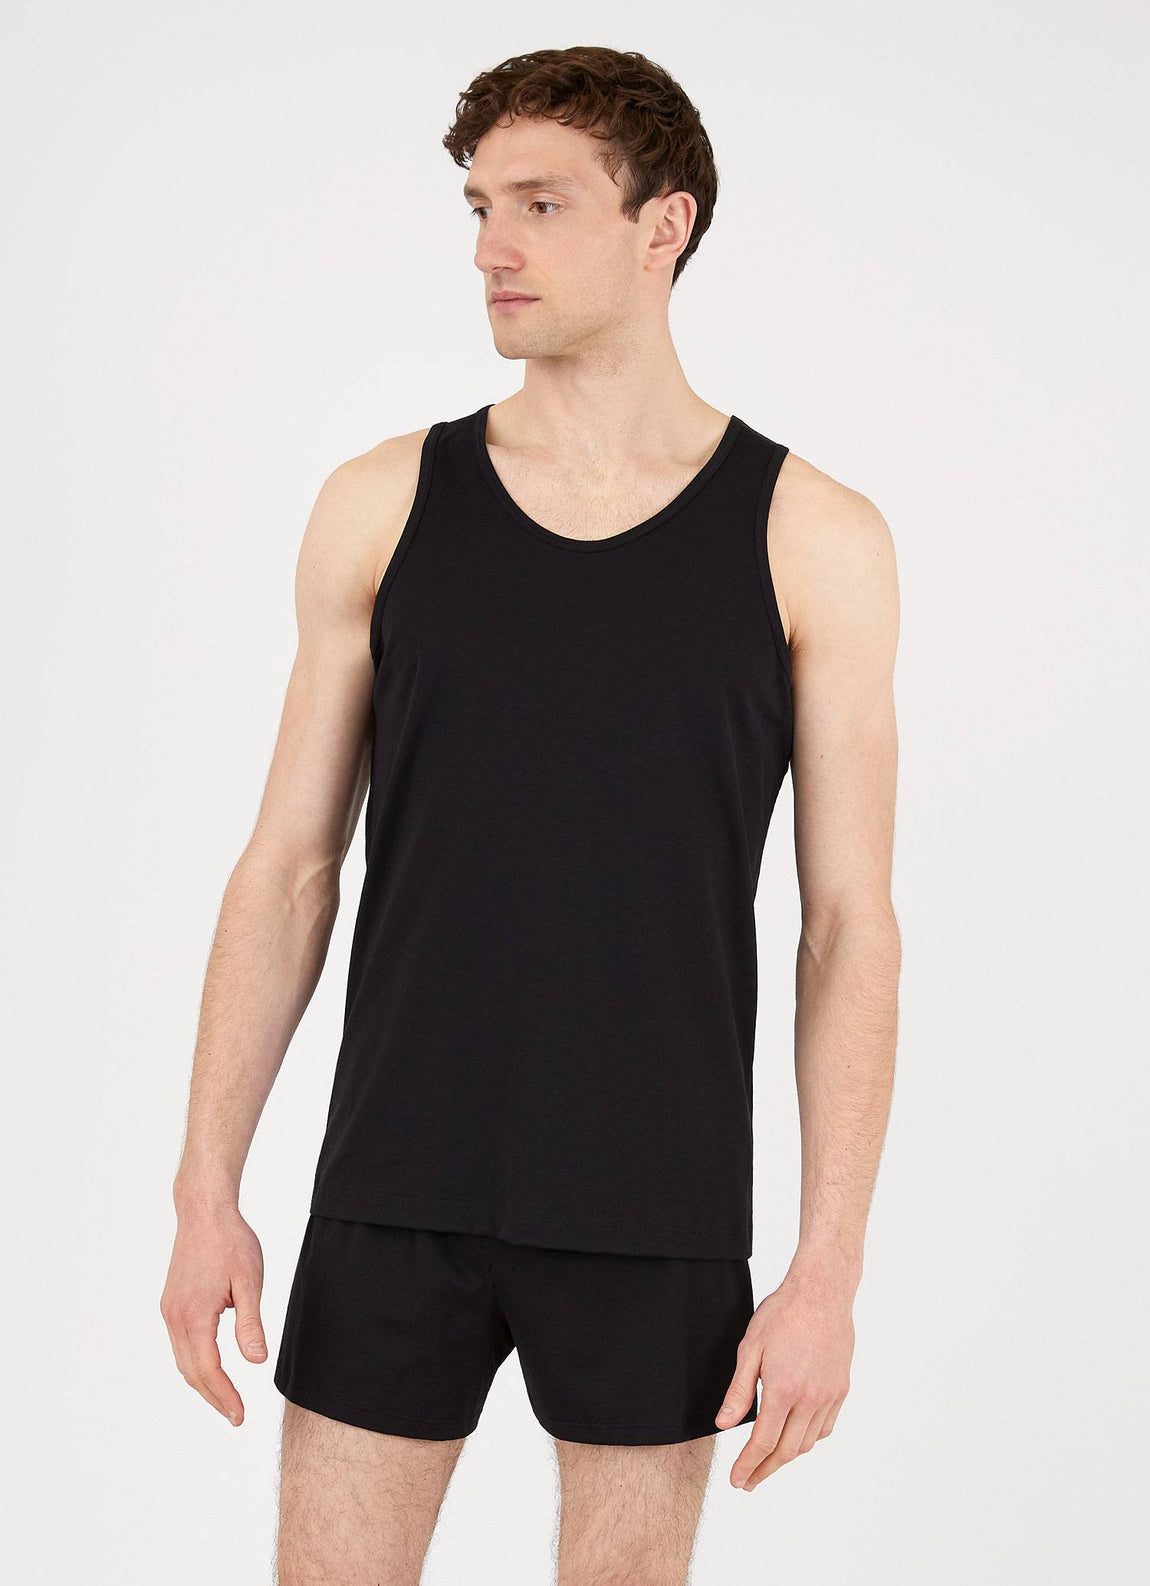 Men's Superfine Cotton Underwear Vest in Black | Sunspel